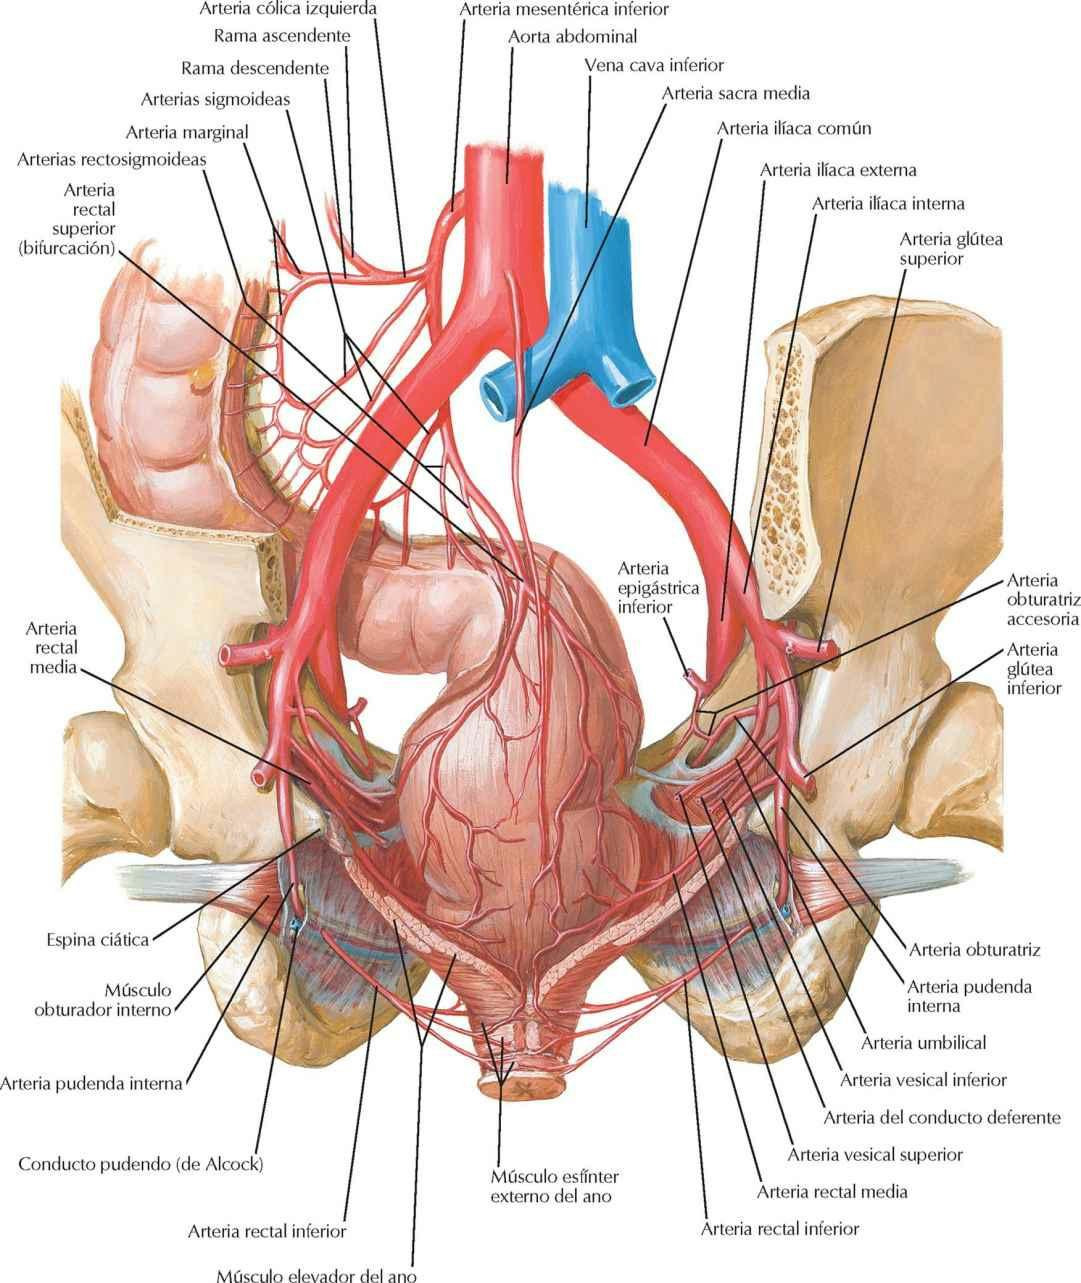 Arterias del recto y conducto anal en el varón: visión posterior